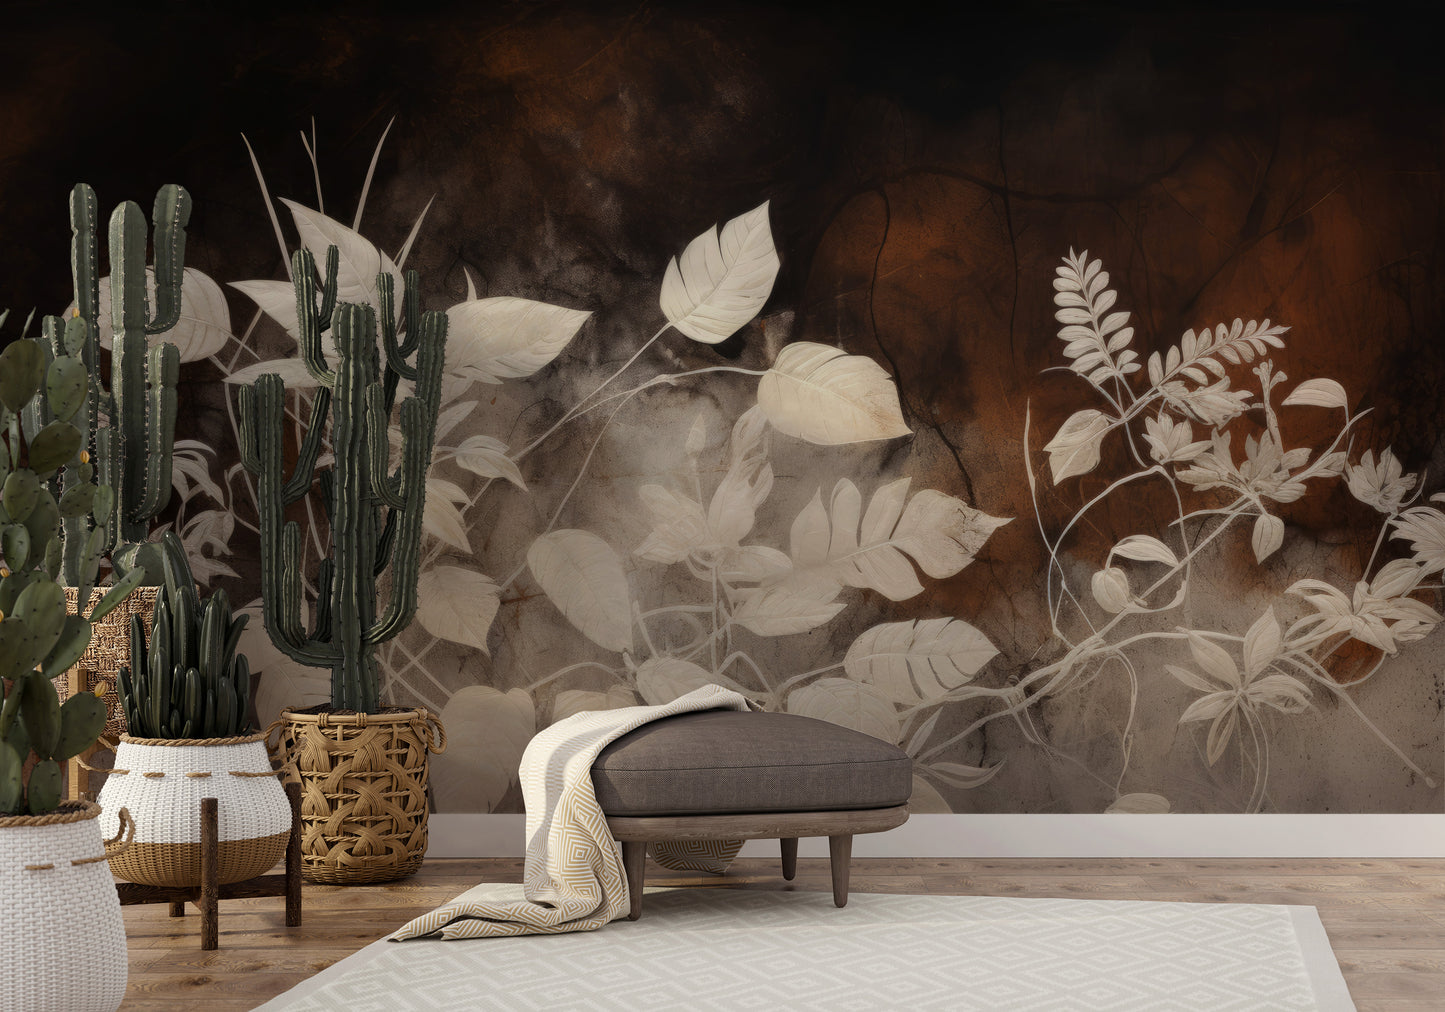 Wzór fototapety malowanej o nazwie Floral Haze pokazanej w aranżacji wnętrza.